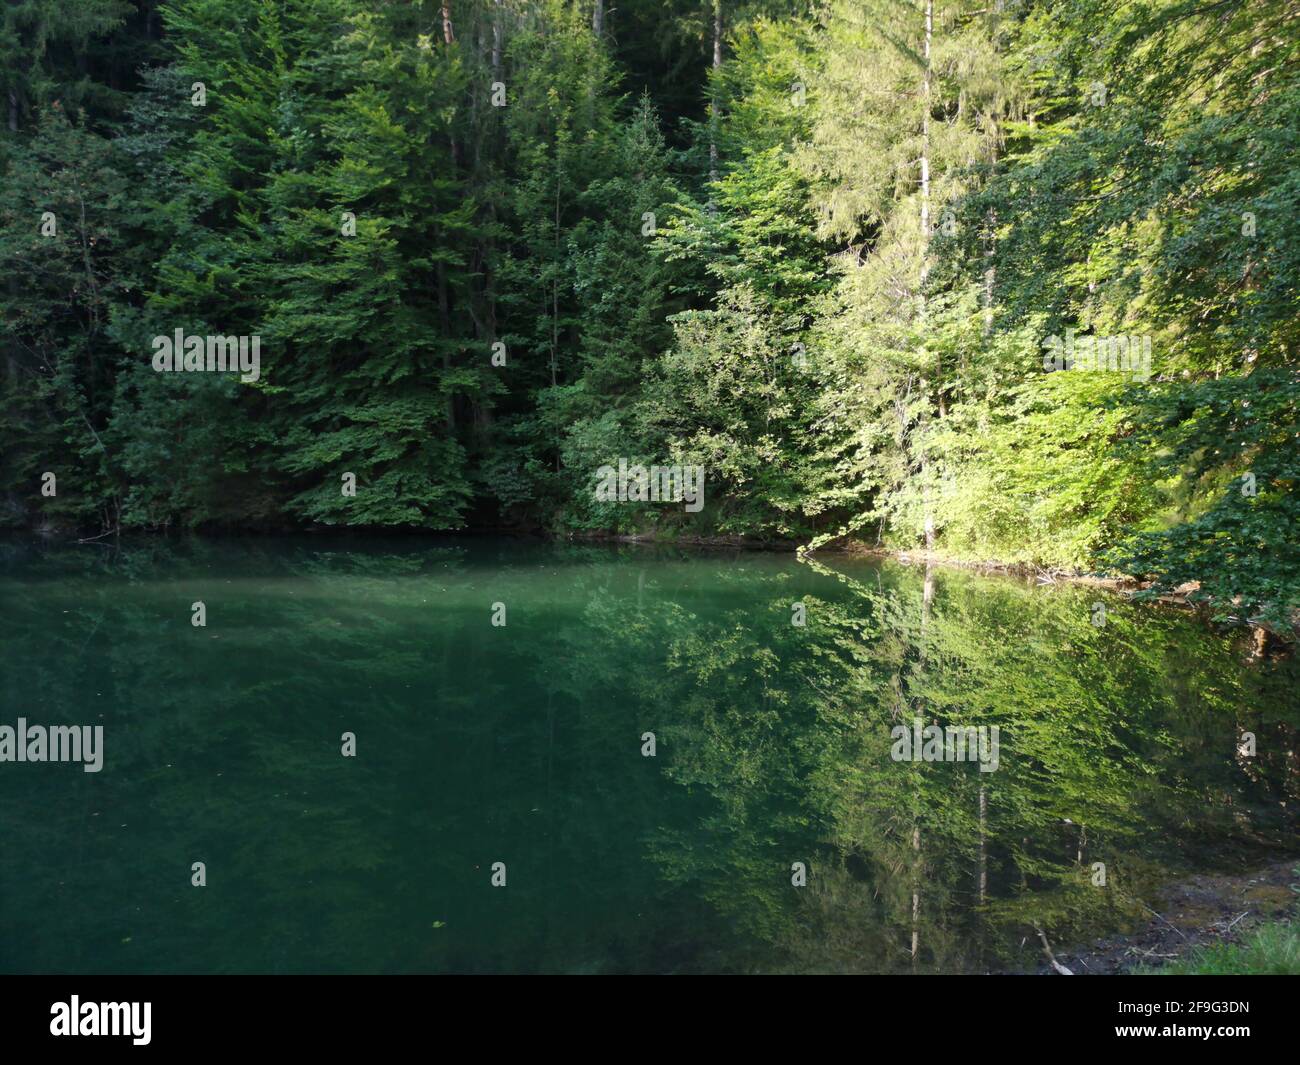 Belle photo d'un lac dans une forêt avec les sapins verts reflétant dans l'eau Banque D'Images